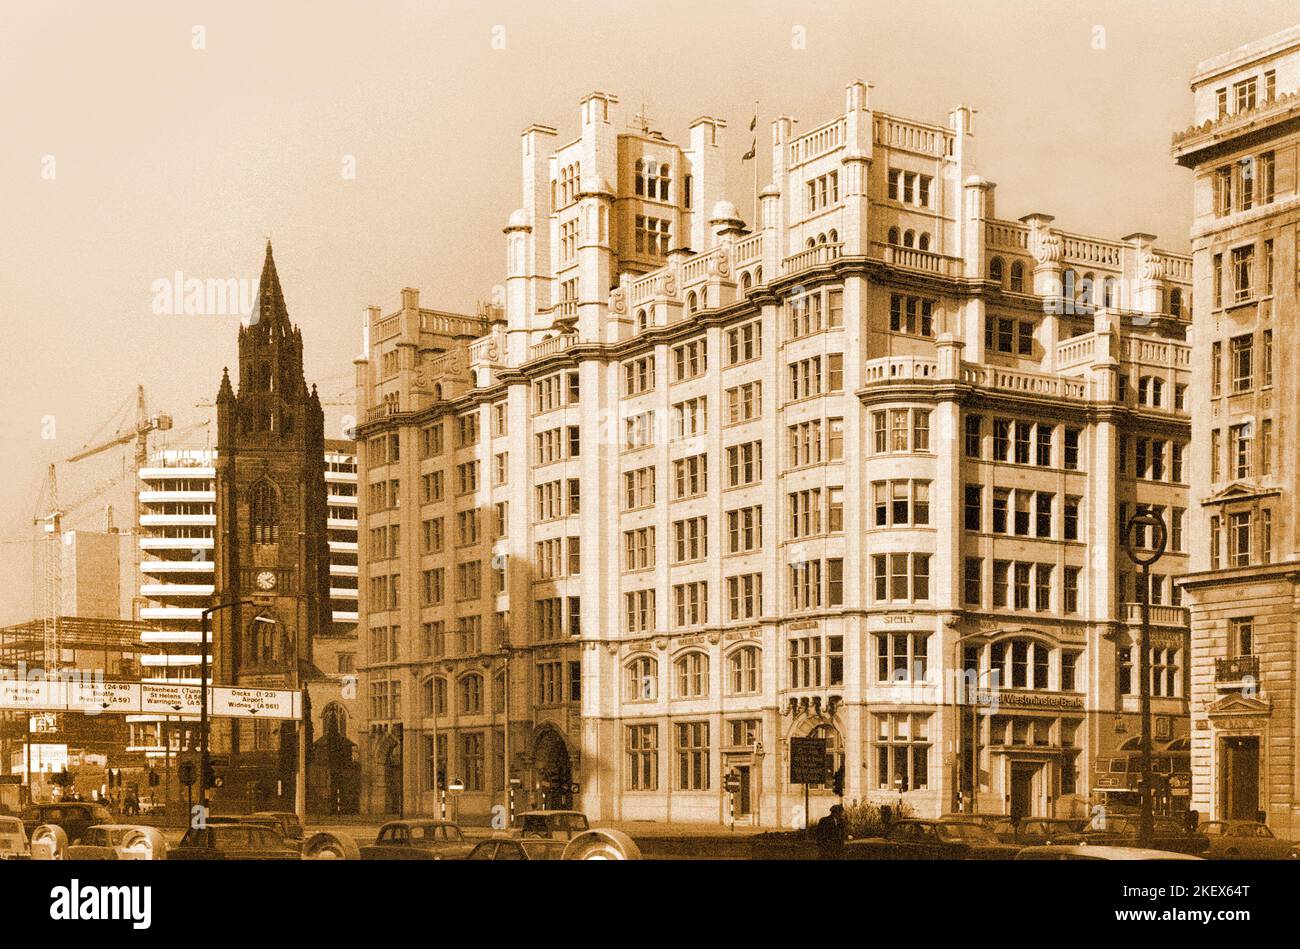 Liverpool vintage, 1969, Tower Buildings and Historic Church, "nostra Signora e San Nicola" vicino al Pier Head. Immagine di seppia Foto Stock